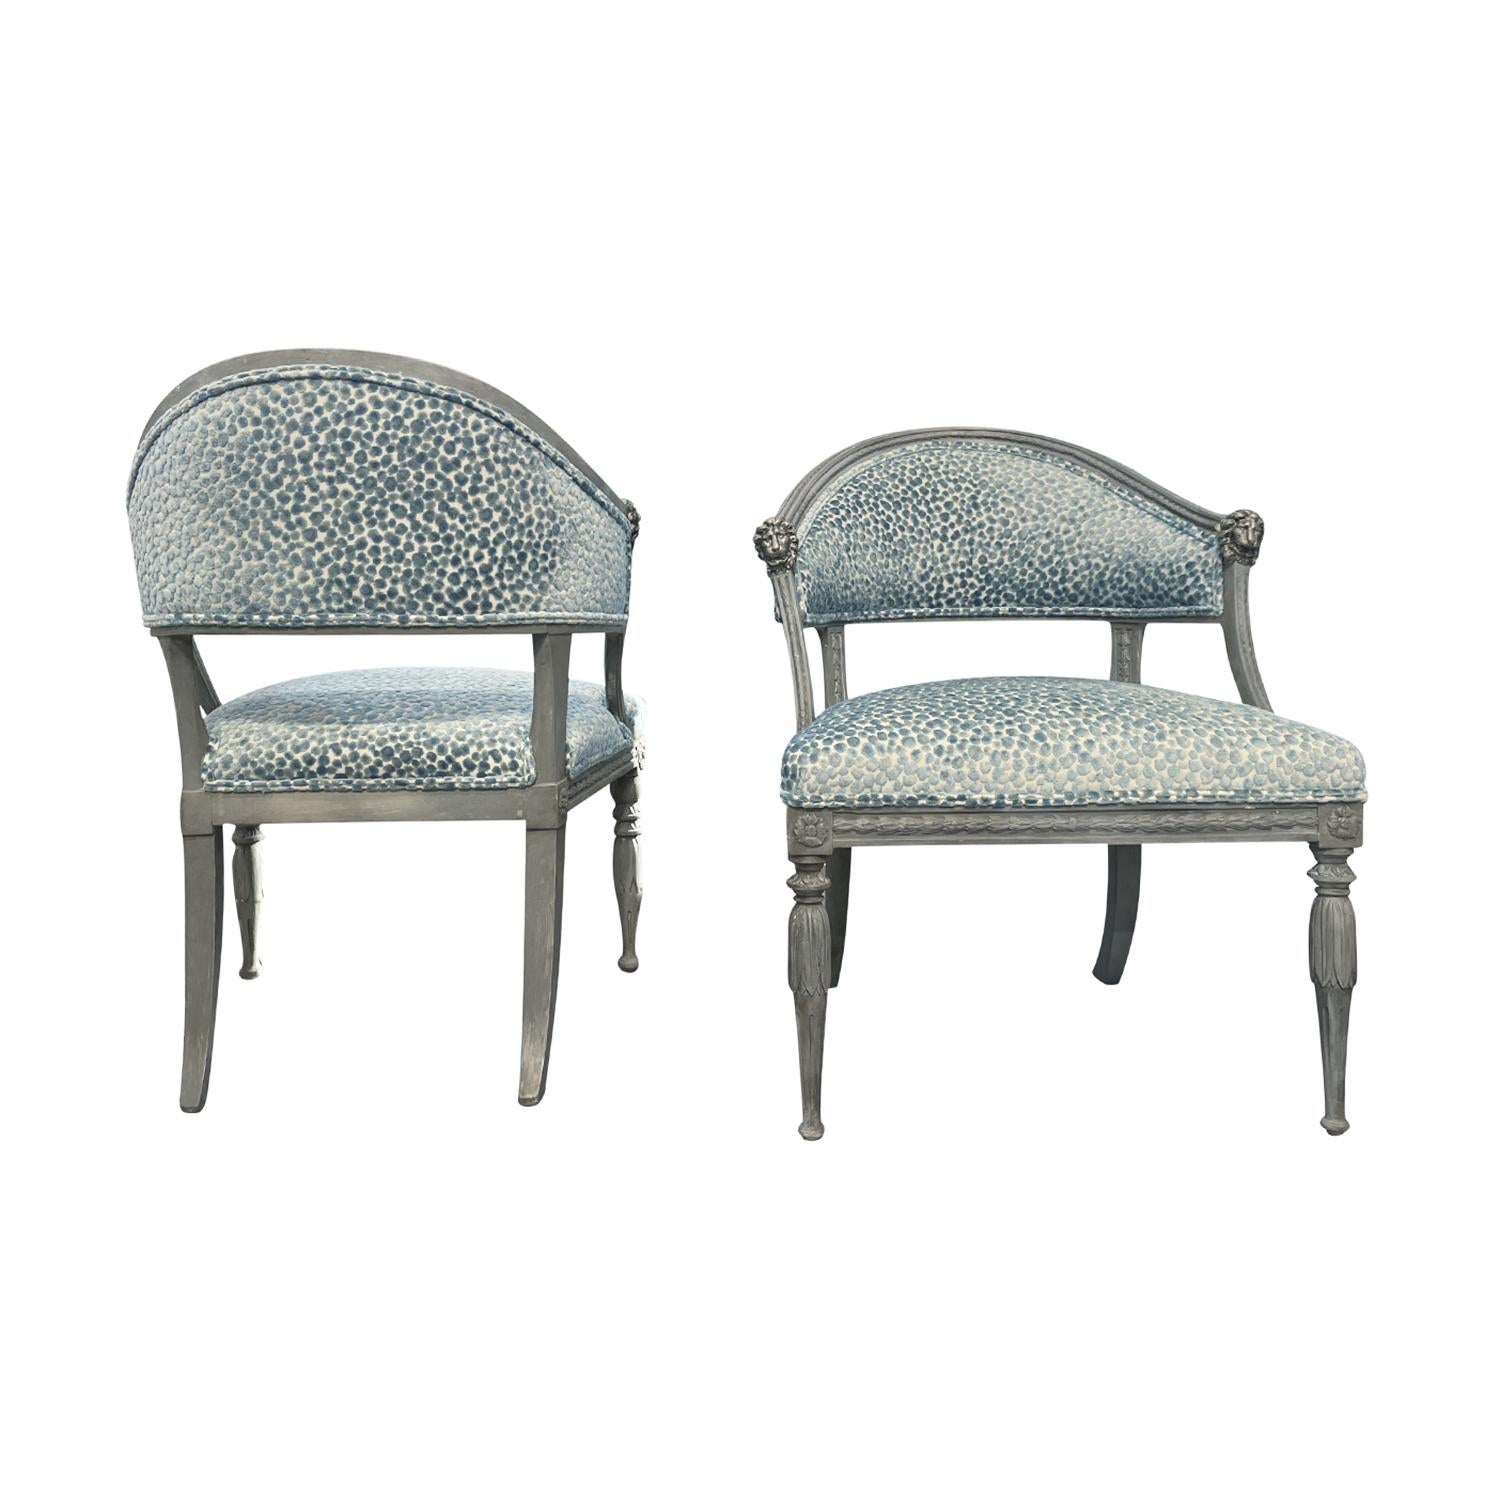 Ein graues, antikes schwedisches Gustavianisches Sessel-Set aus handgefertigtem, bemaltem Birkenholz, entworfen und hergestellt wahrscheinlich von Ephraim Ståhl in gutem Zustand. Die skandinavischen Beistellstühle haben eine halbrunde Rückenlehne